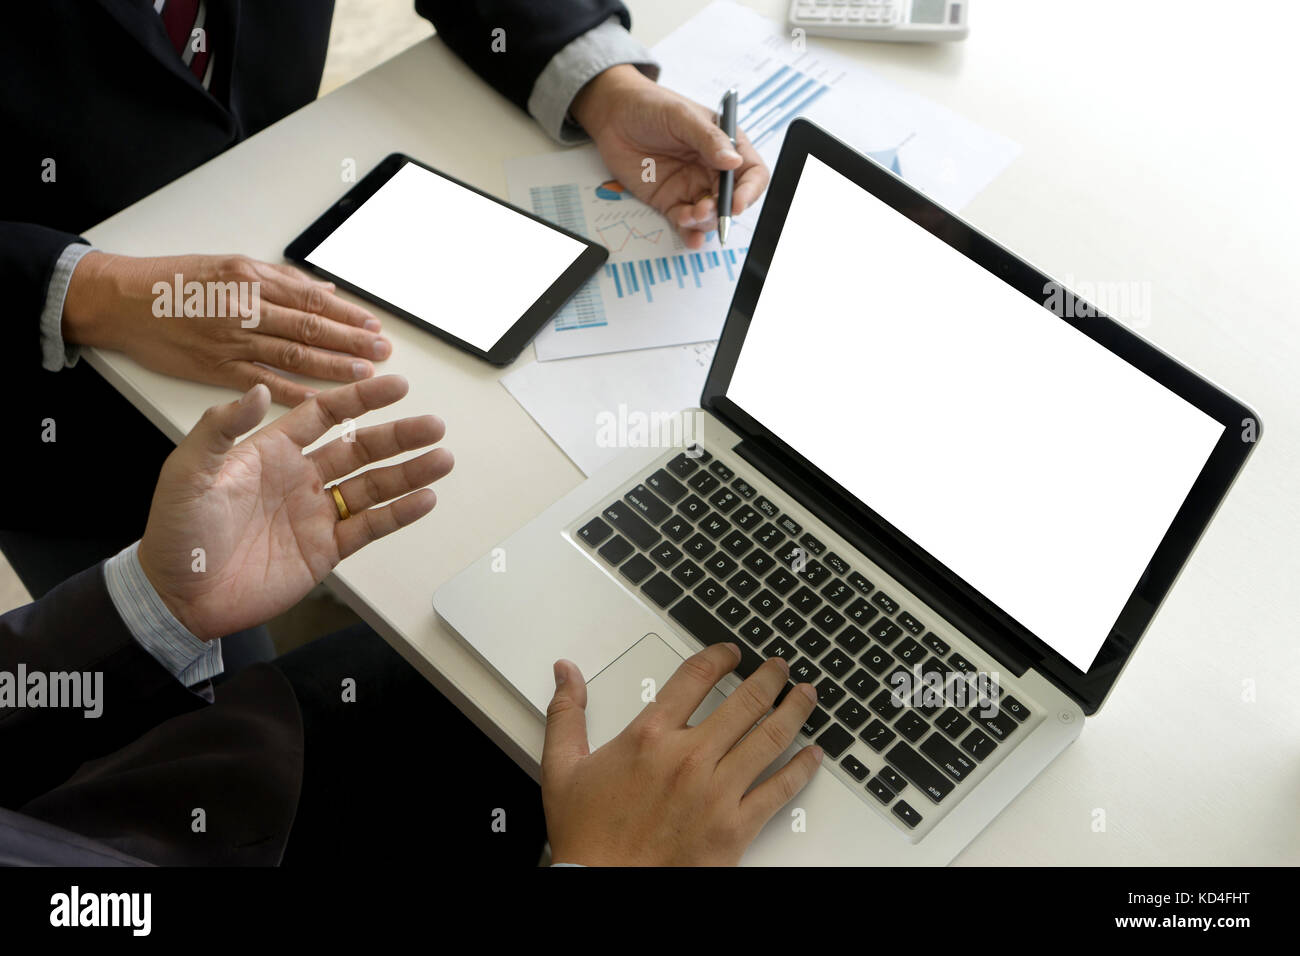 Deux man utilisent l'ordinateur et de l'analyse graphique papier sur table avec ordinateur et écran de tablette clipping path Banque D'Images